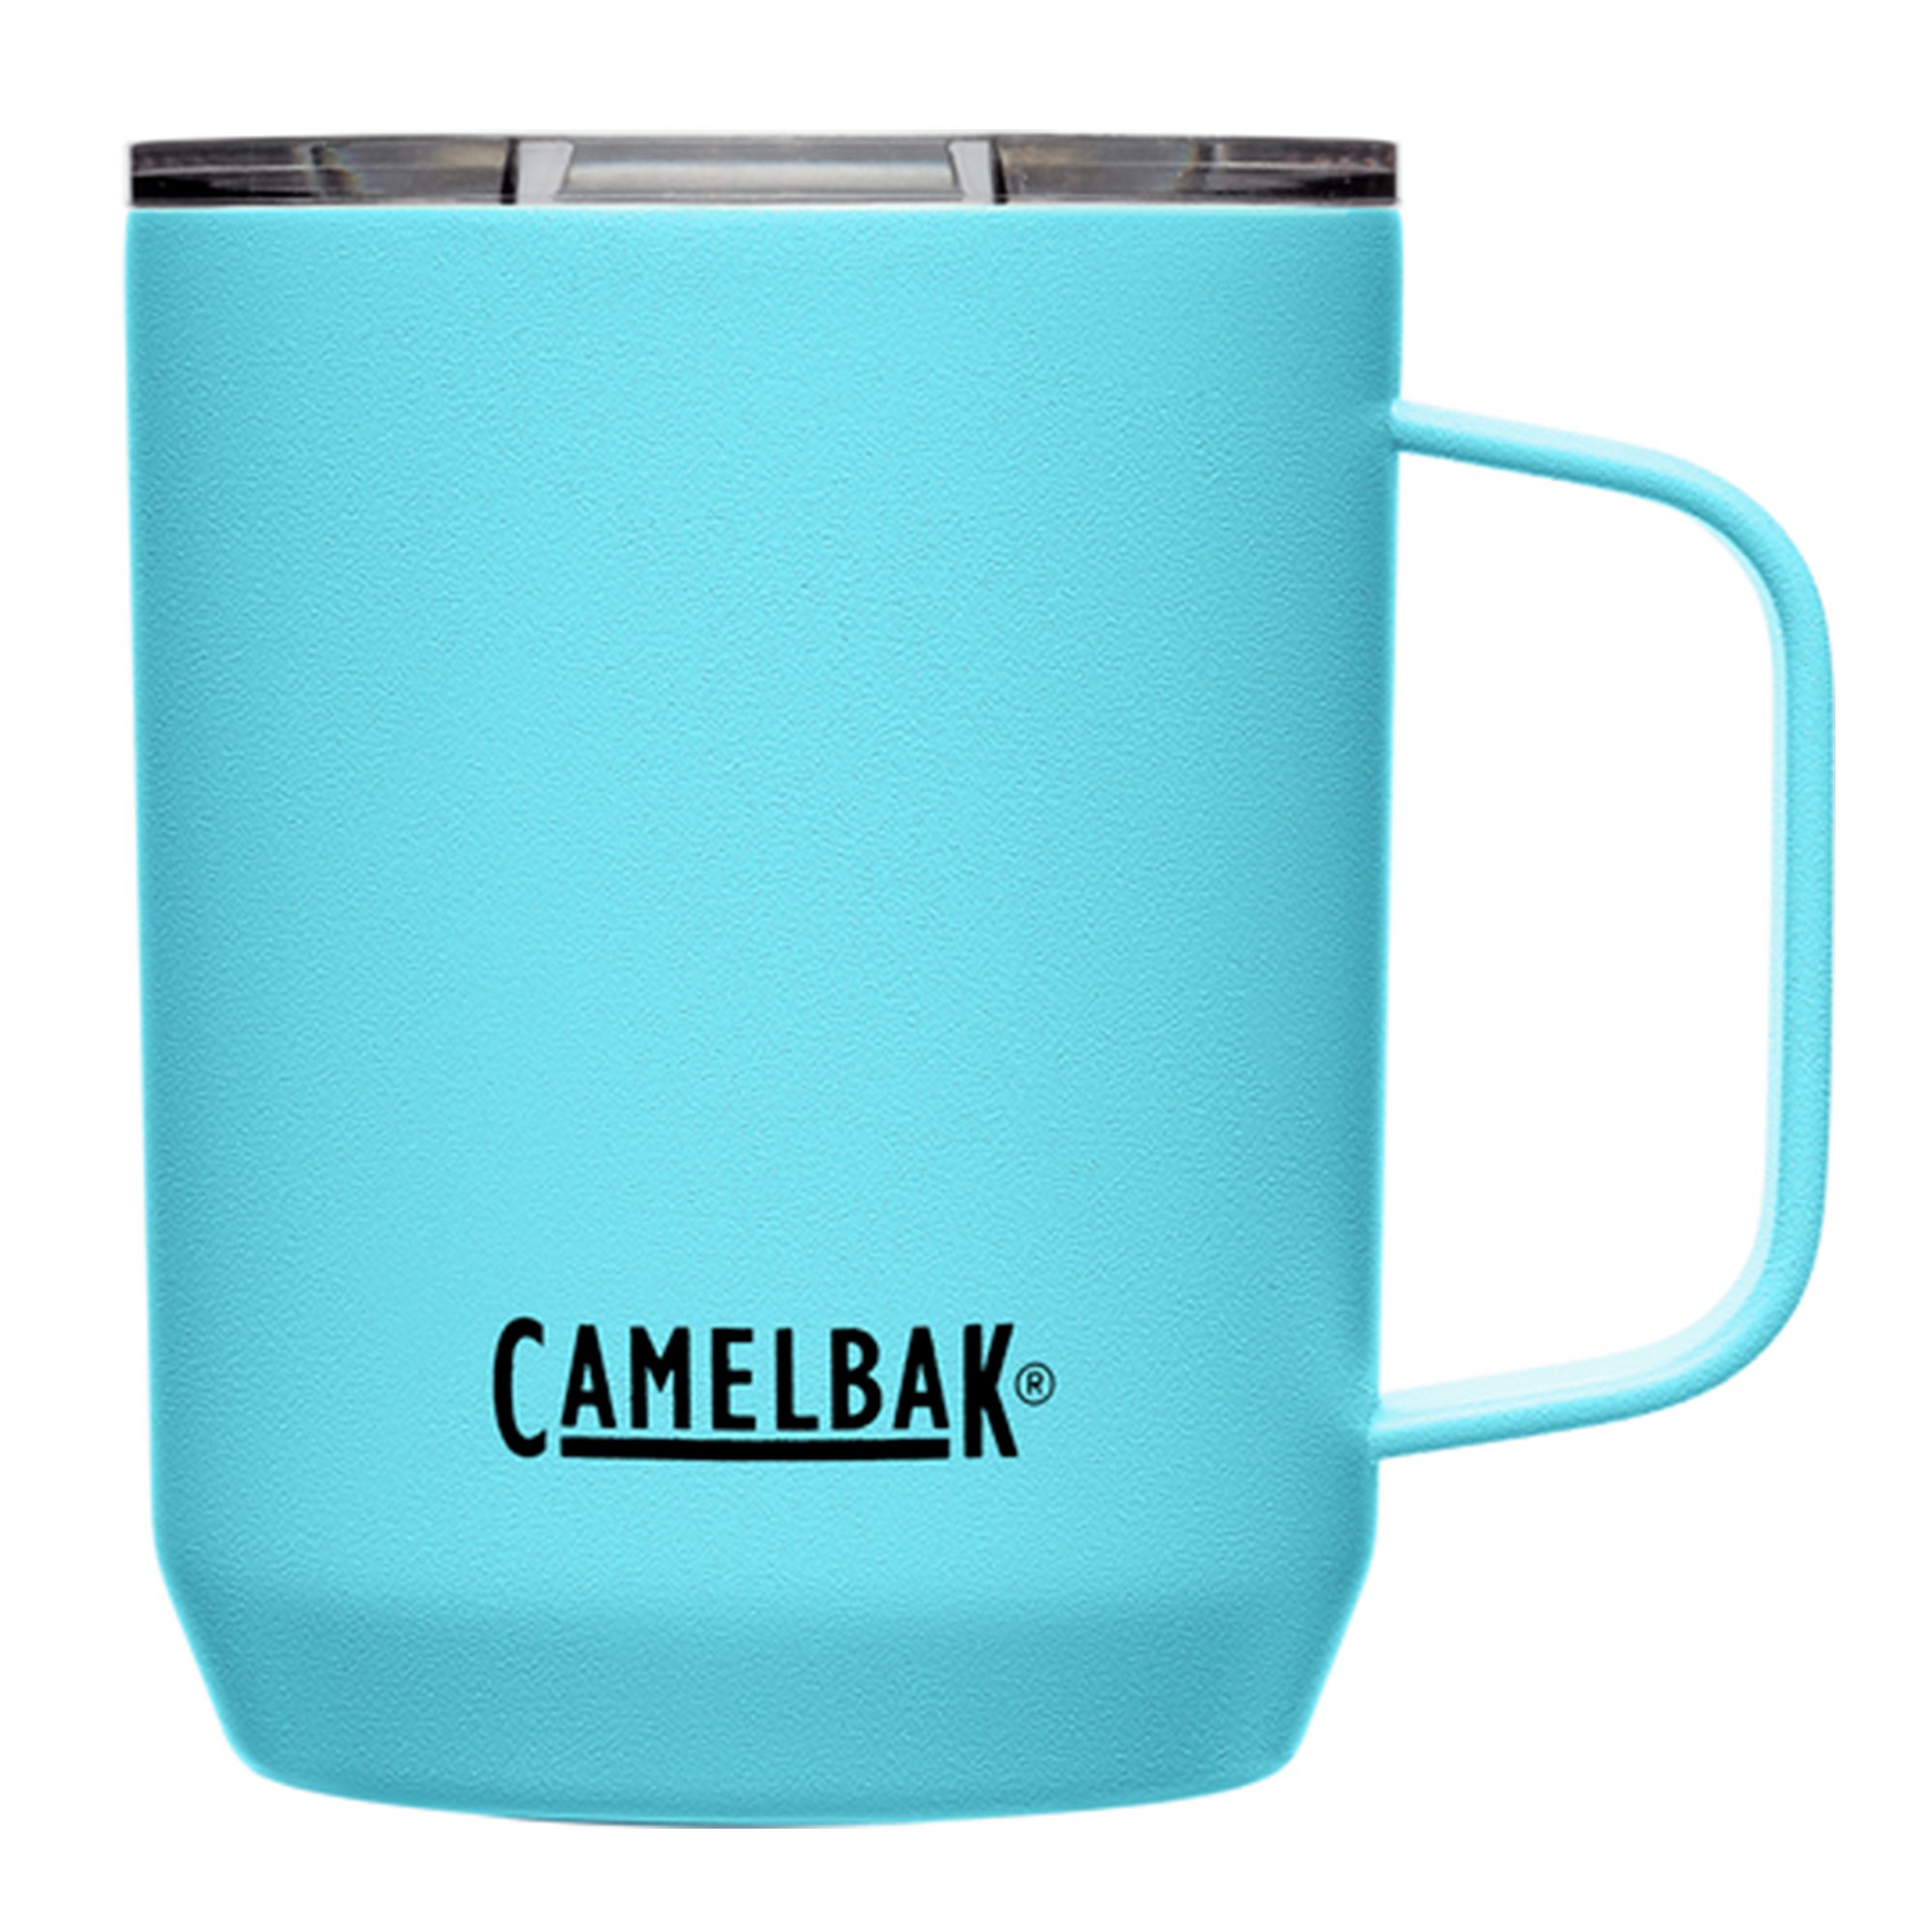 Camelbak Termokrus 0.35 liter, nordic blue